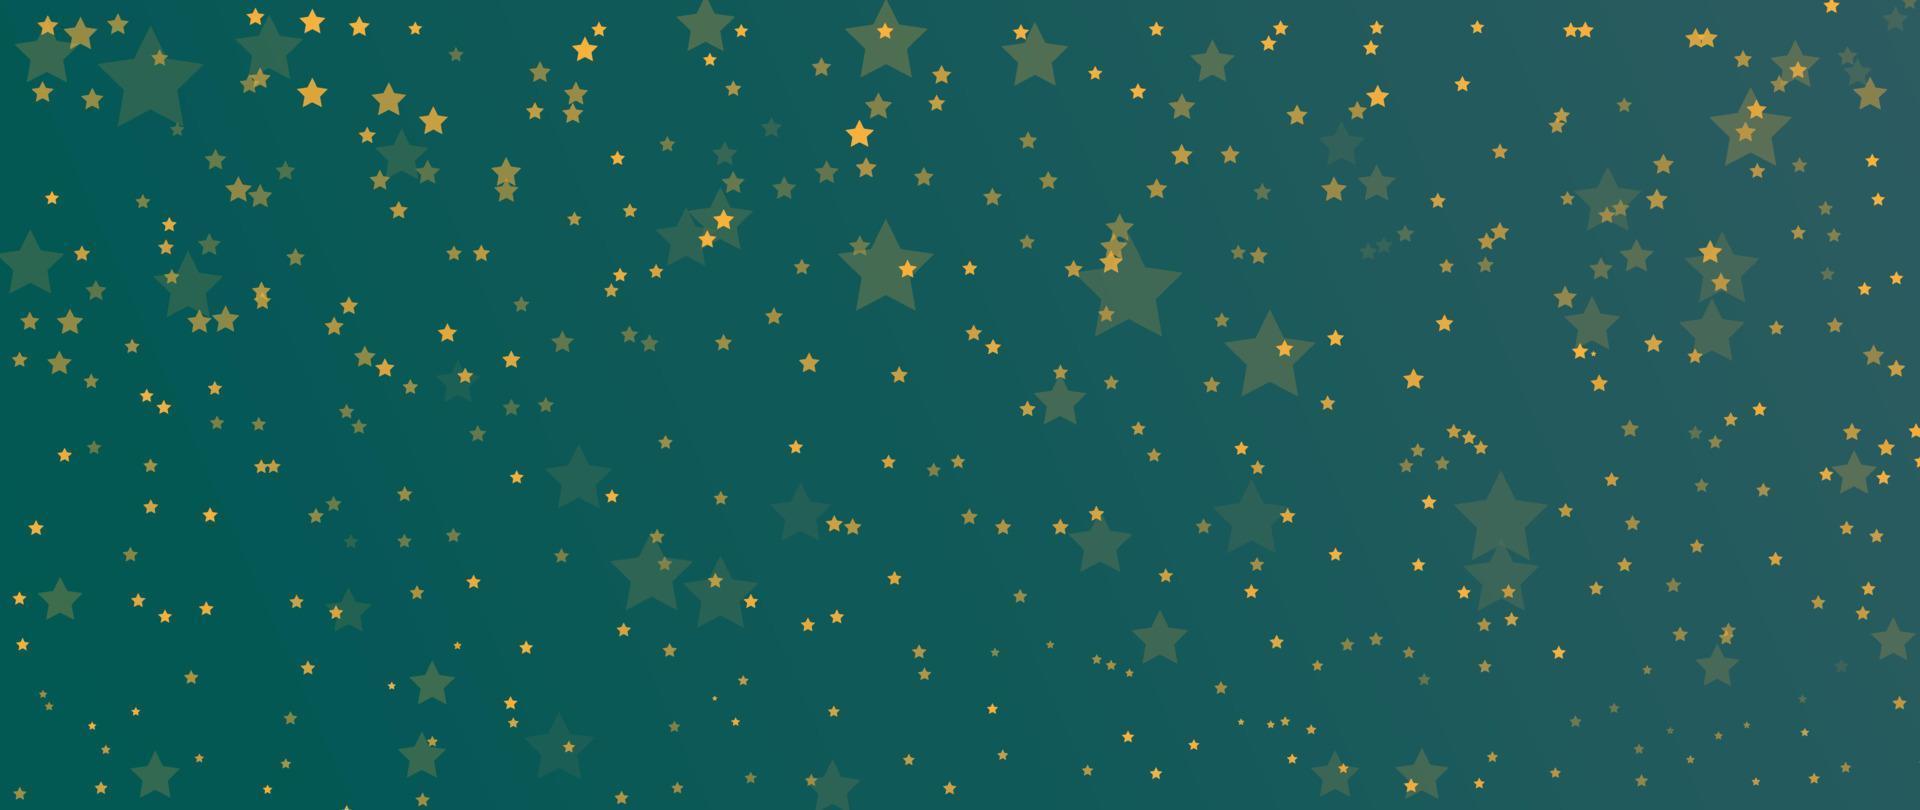 elegante ilustración de vector de fondo de estrella de invierno. estrella de oro brillante decorativa de lujo con fondo verde claro bokeh. diseño adecuado para tarjeta de invitación, saludo, papel tapiz, afiche, pancarta.